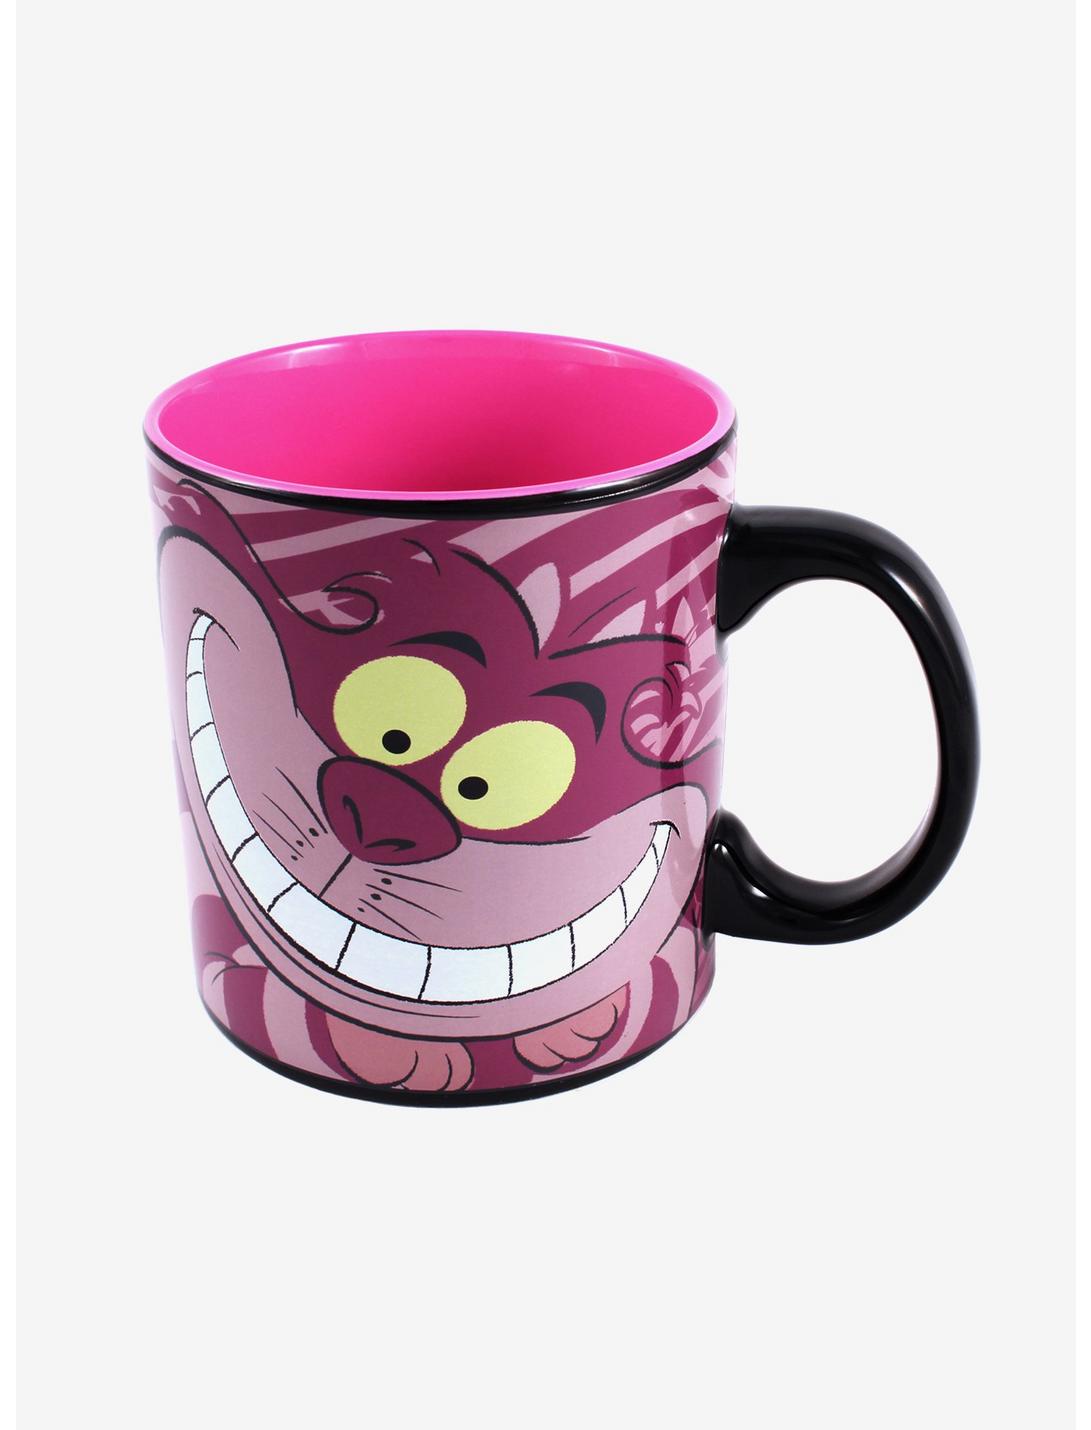 Disney Alice In Wonderland Cheshire Cat Mug, , hi-res